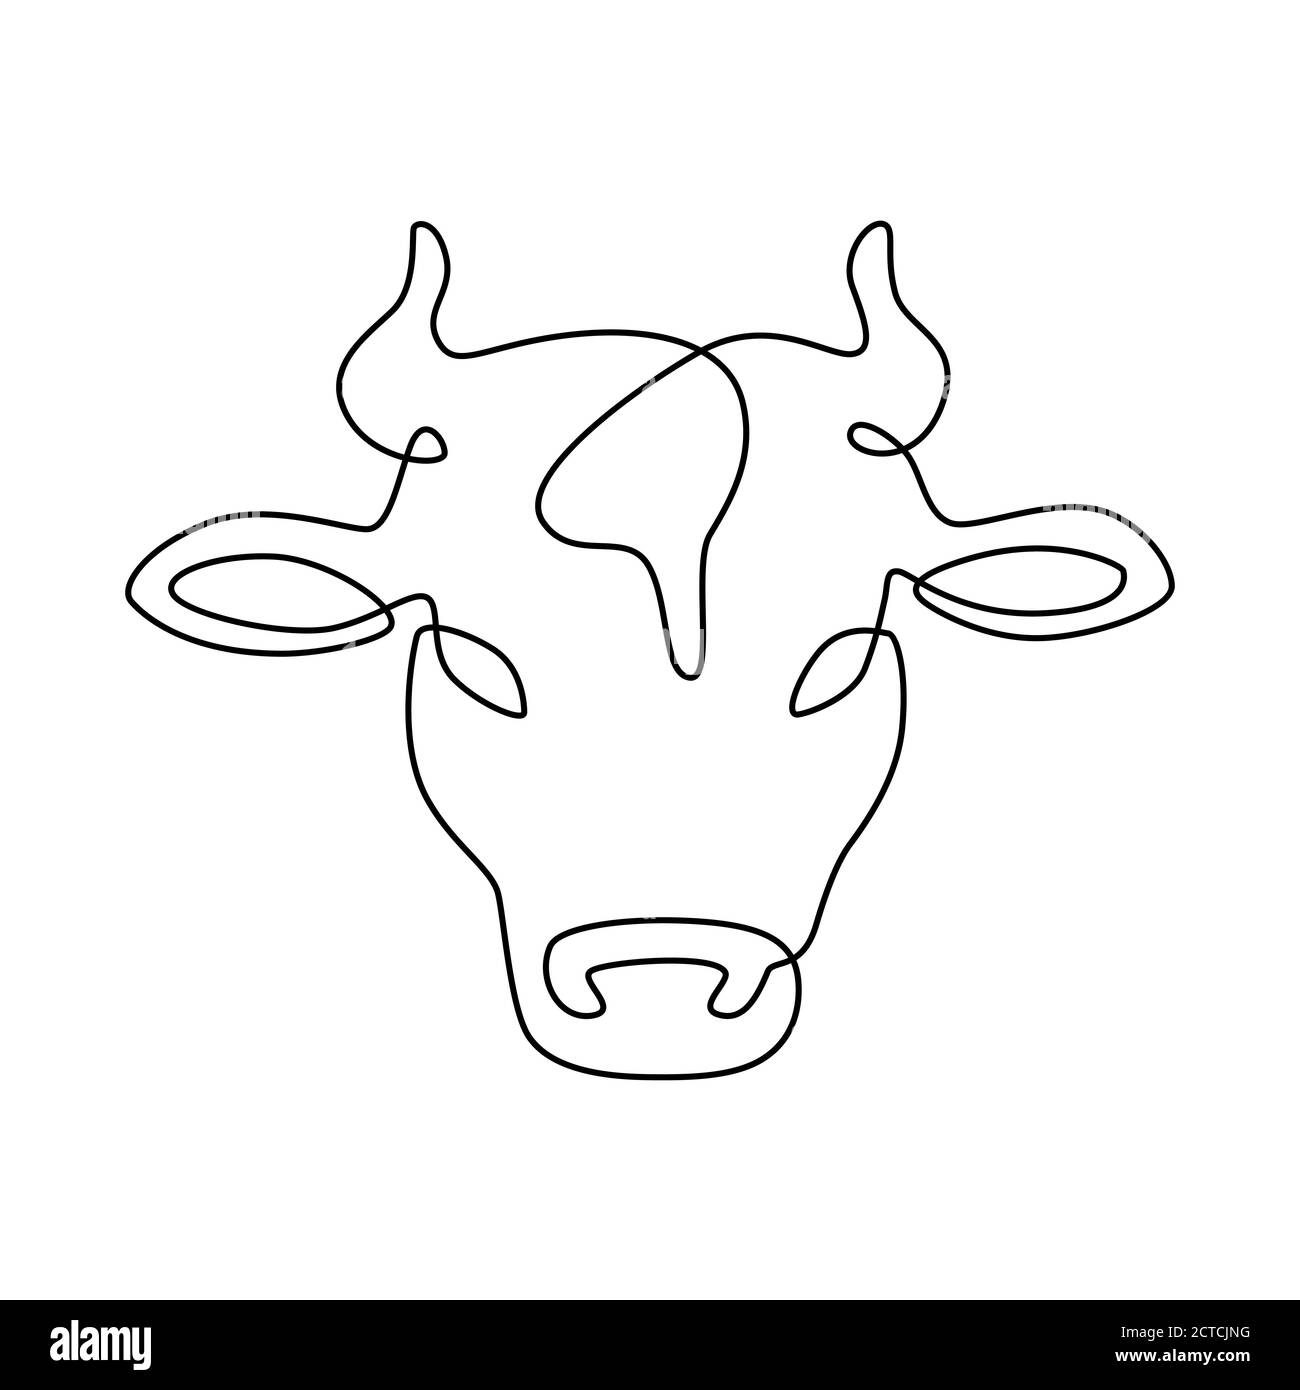 Tête de vache de ligne. Logo de la ferme de viande de lait et de bœuf, étiquette des produits laitiers. Vecteur de ligne continue de bétail isolé sur emblème blanc. Animal mammifère pour l'agriculture ou Illustration de Vecteur